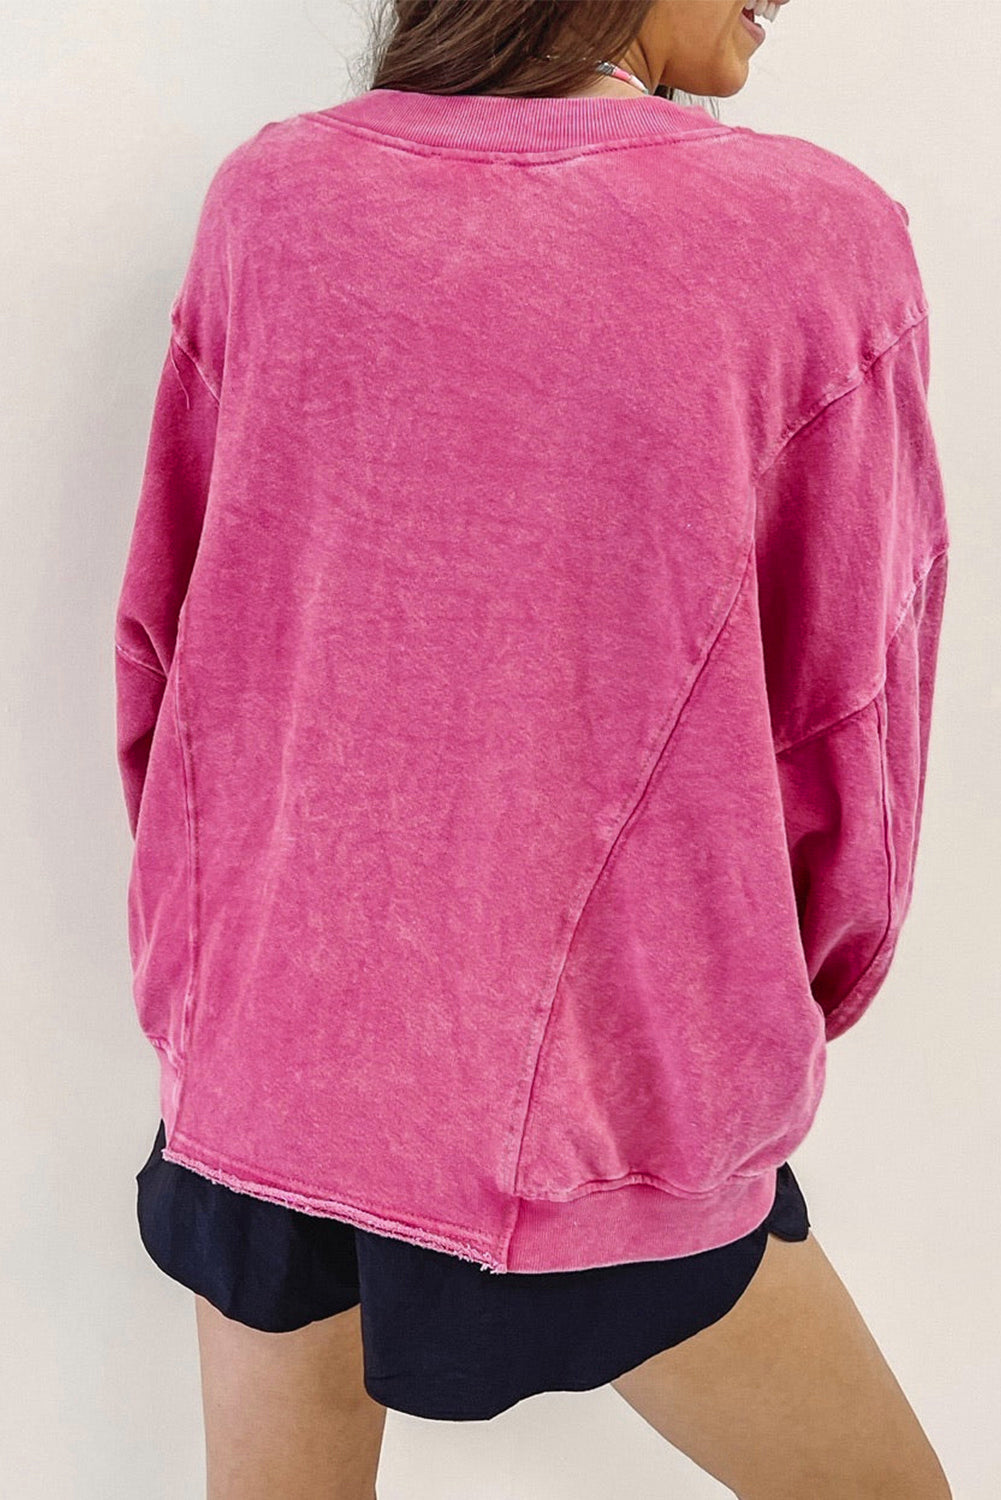 Rose XOXO sweatshirt